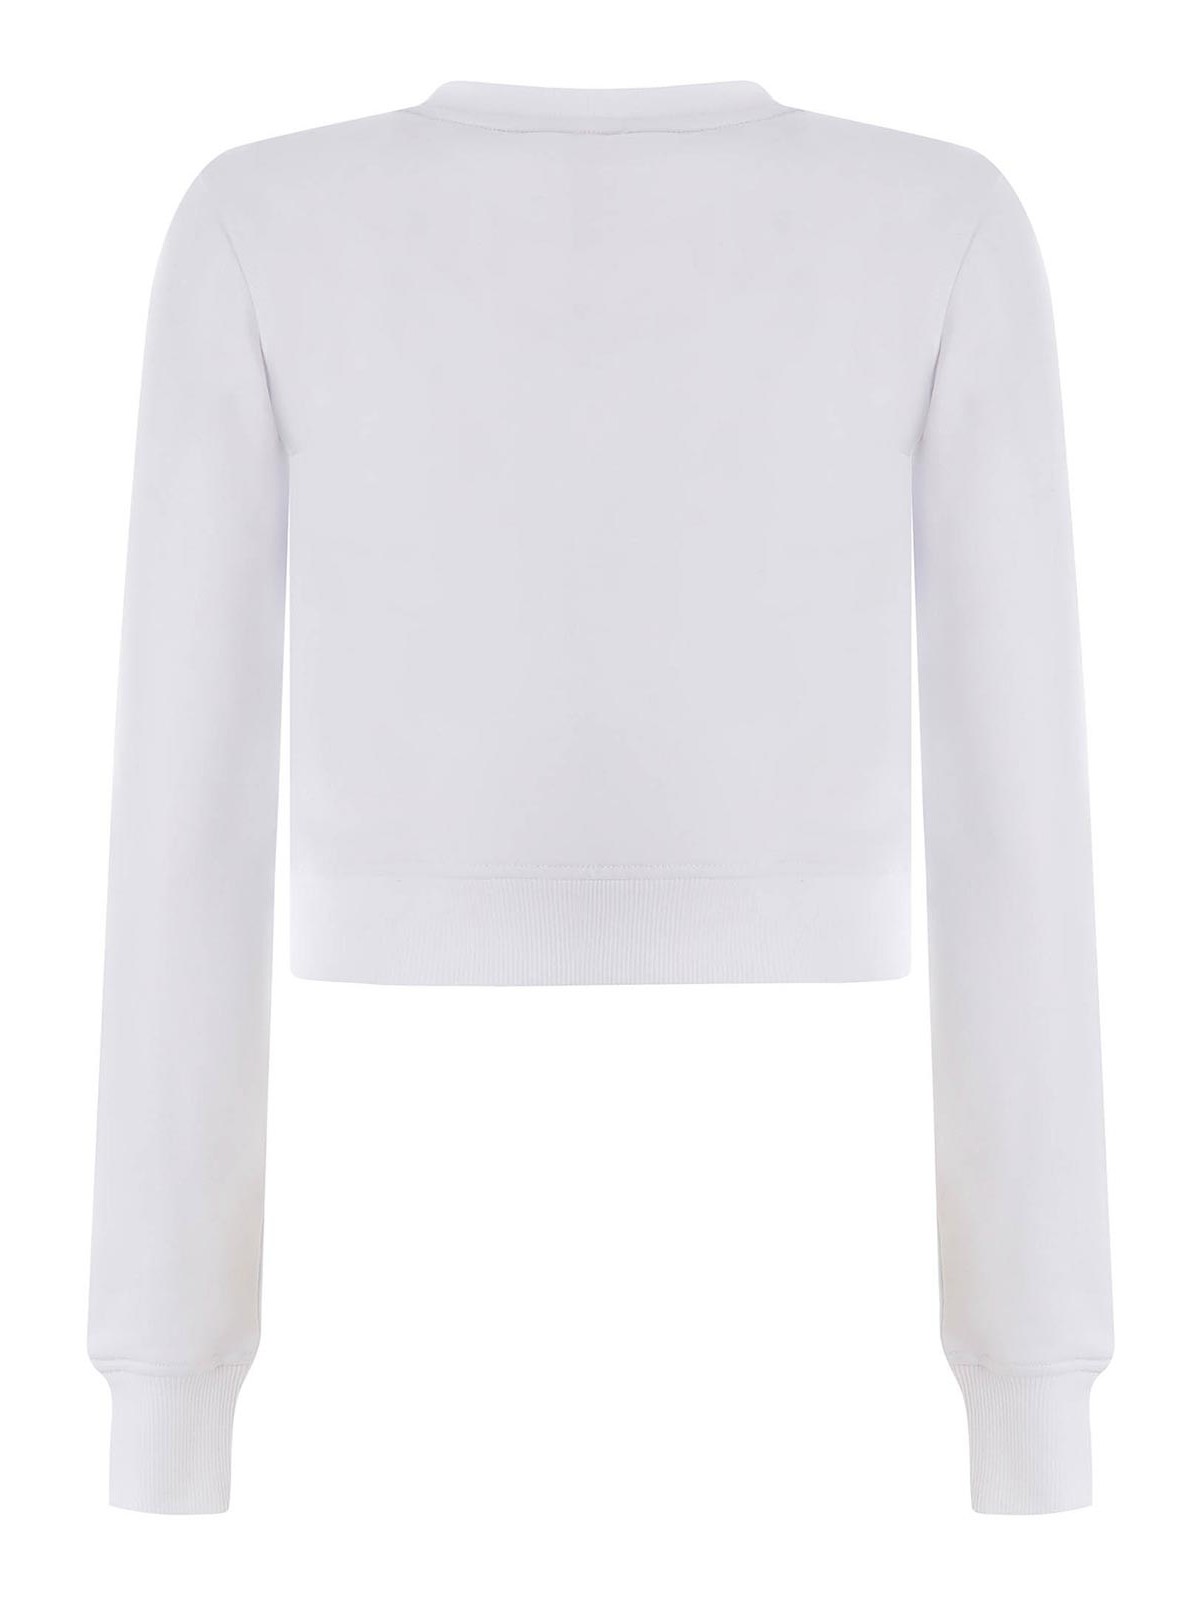 Shop Diesel Cotton Blend Sweatshirt In White